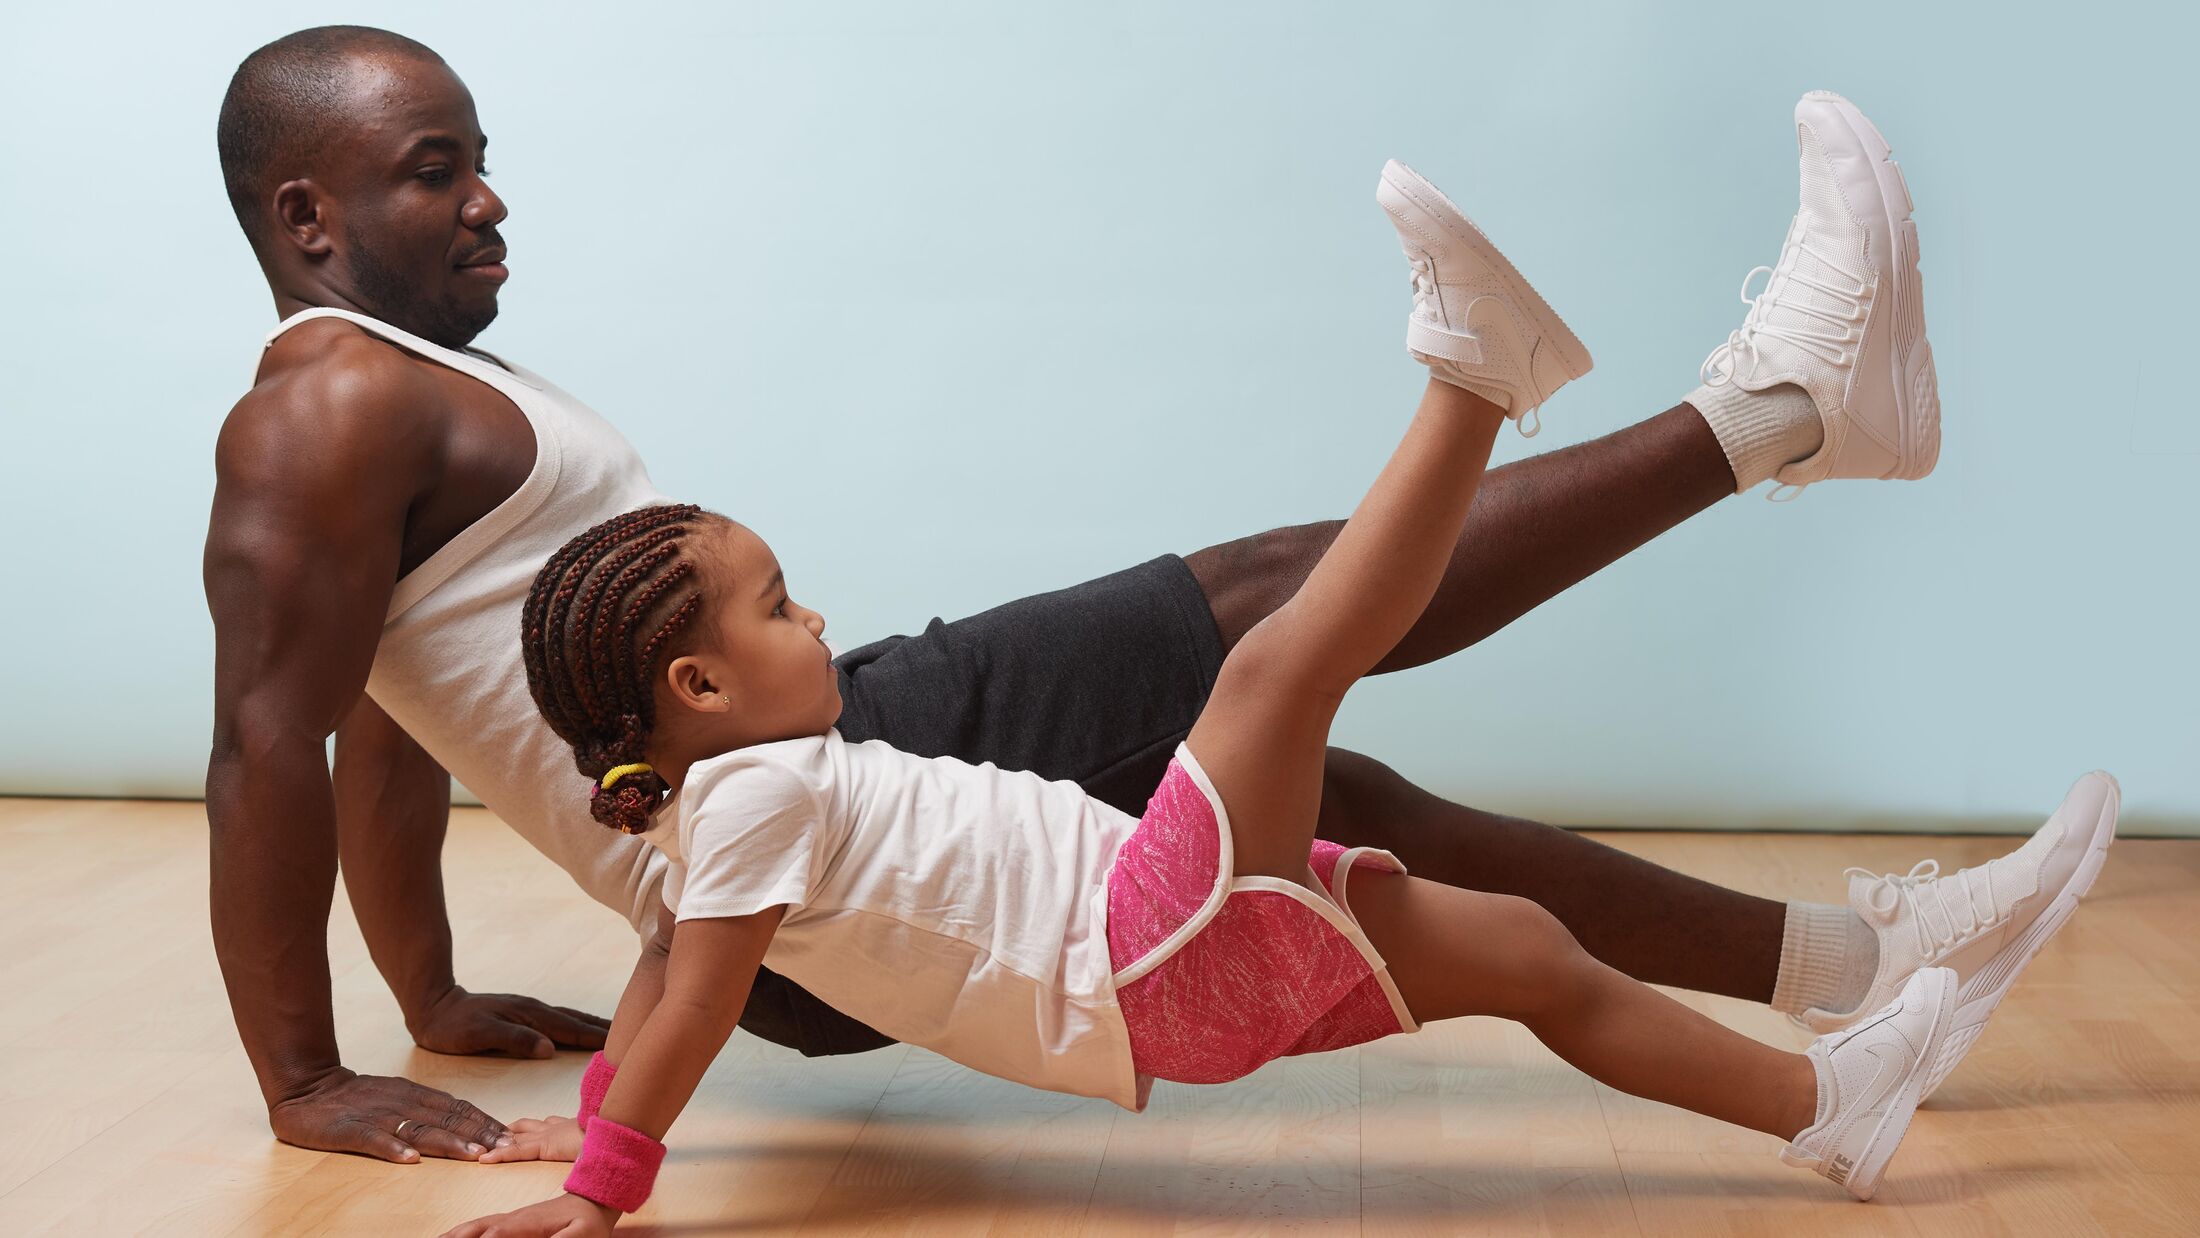 Vater-Kind-Fitness: So treibst du Sport mit Kind